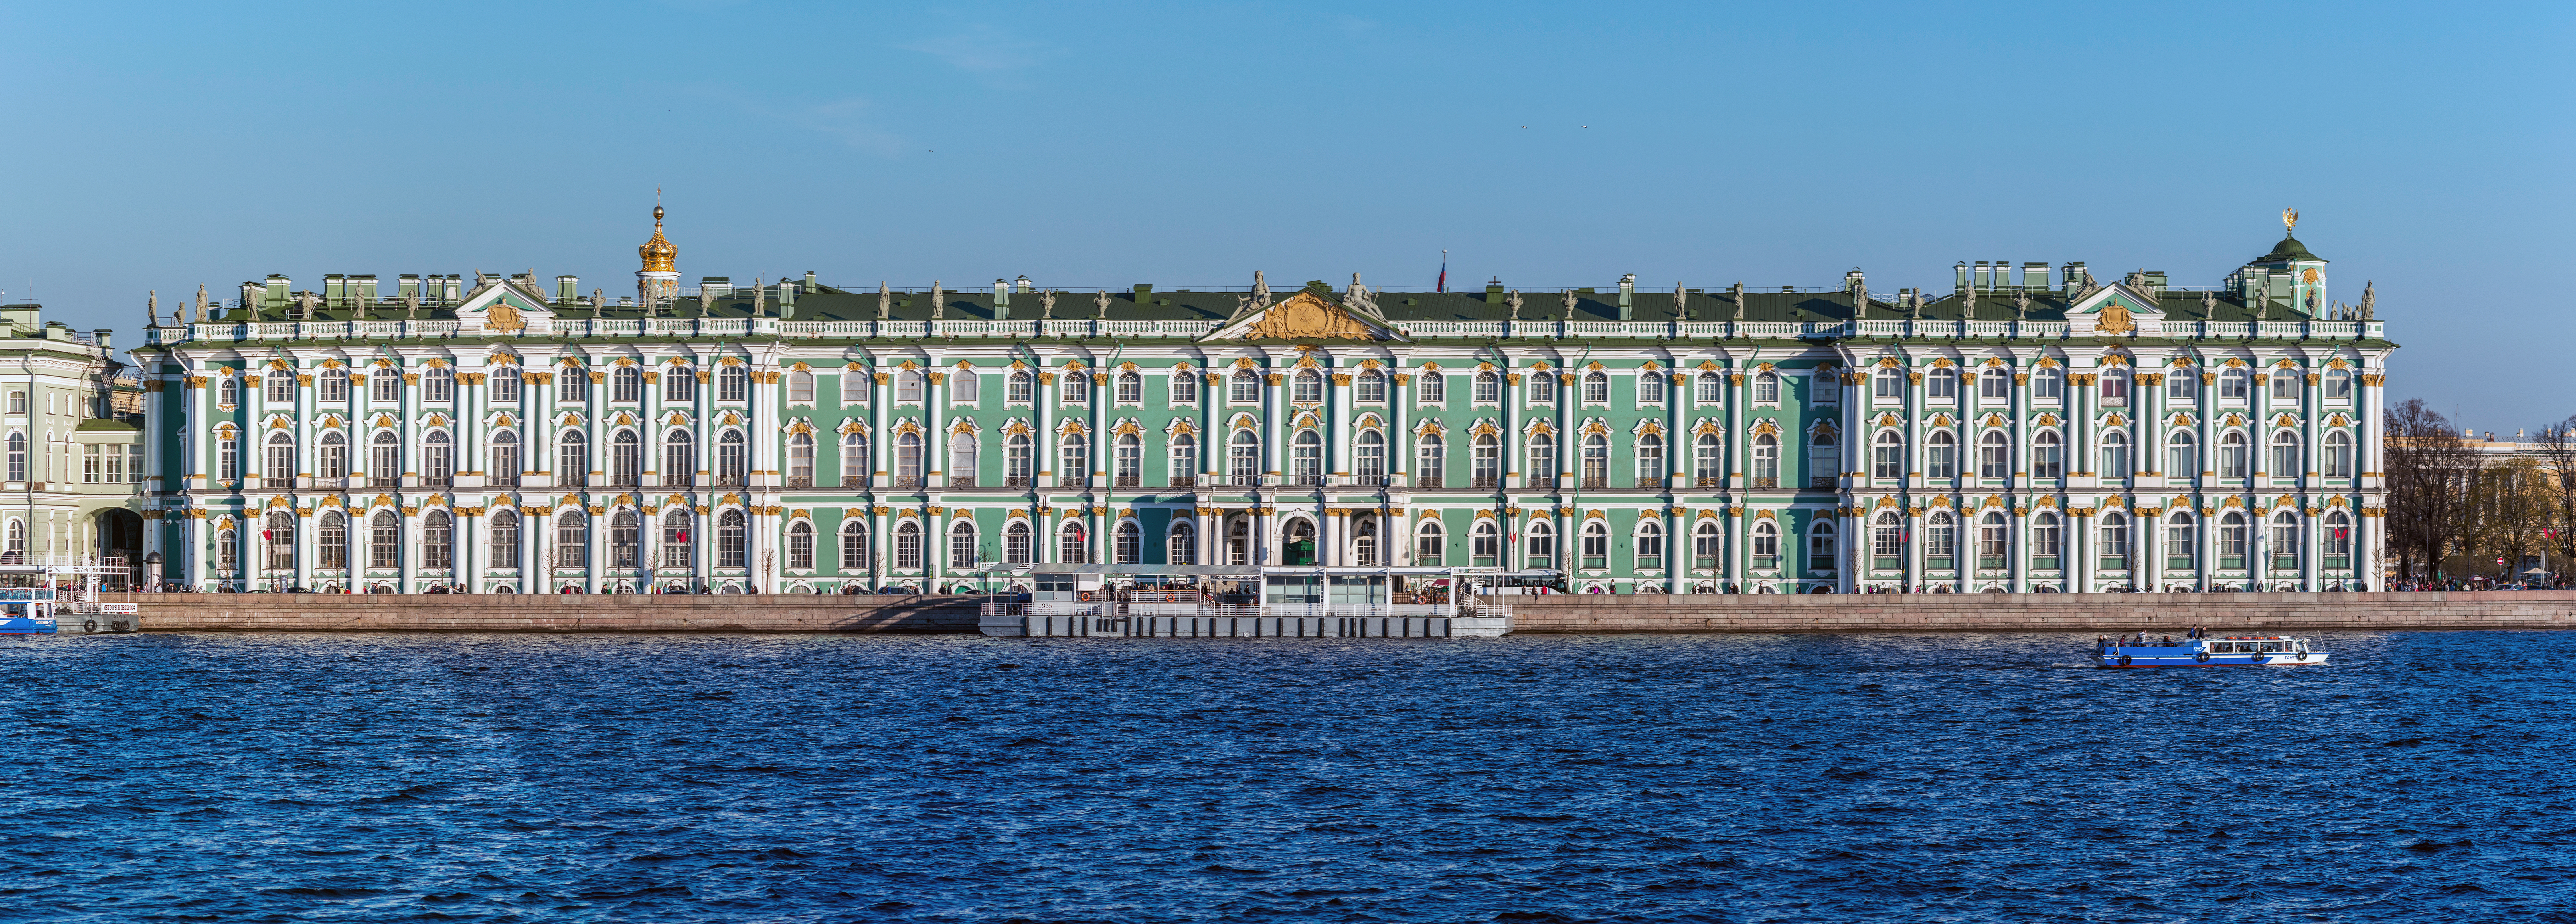 File:Winter Palace Panorama 4.jpg - Wikimedia Commons